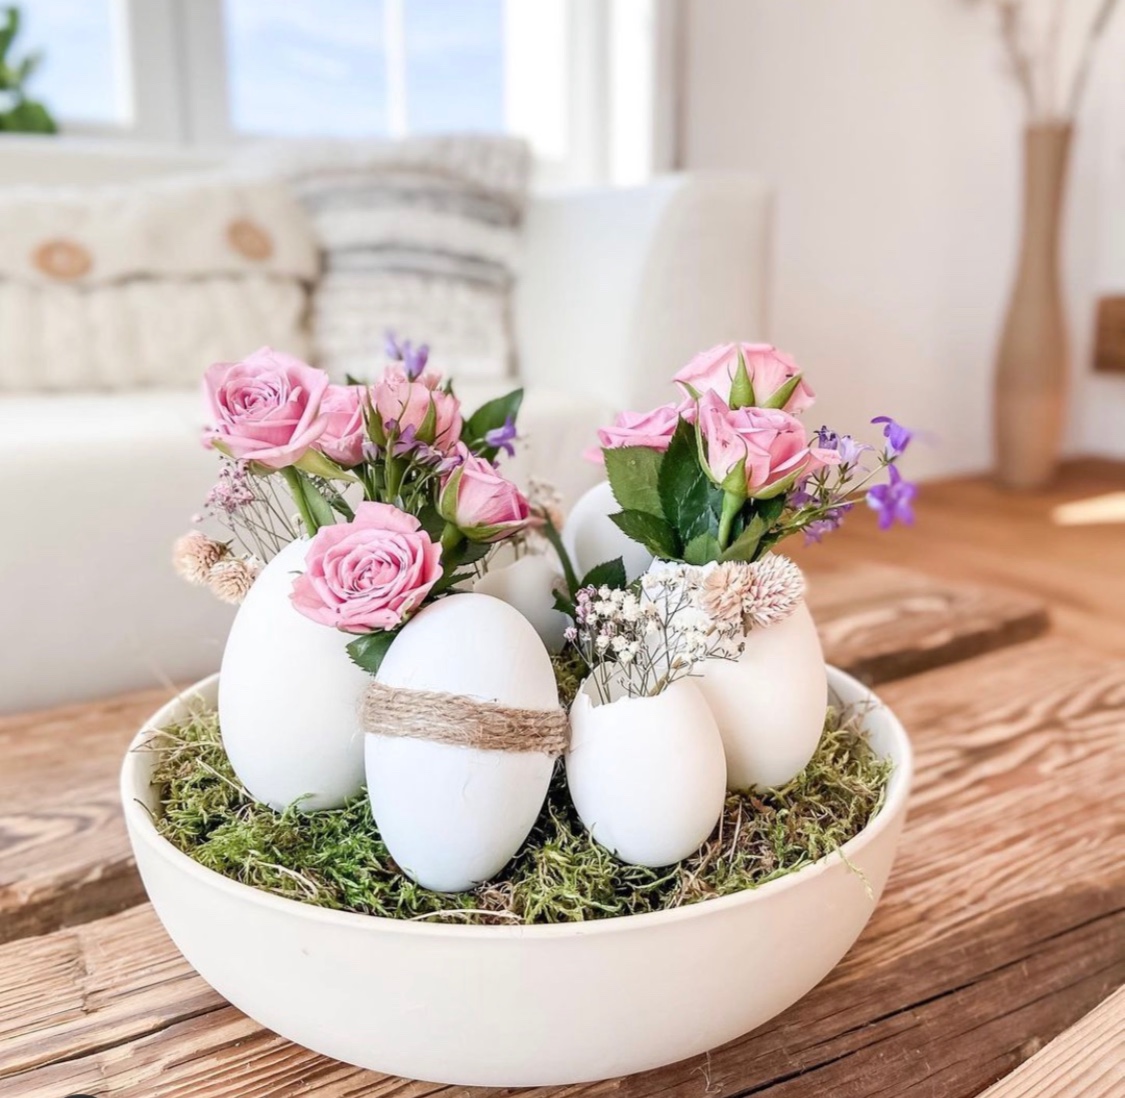 Svátky jara klepou na dveře: Udělejte si velikonoční výzdobu trochu jinak!